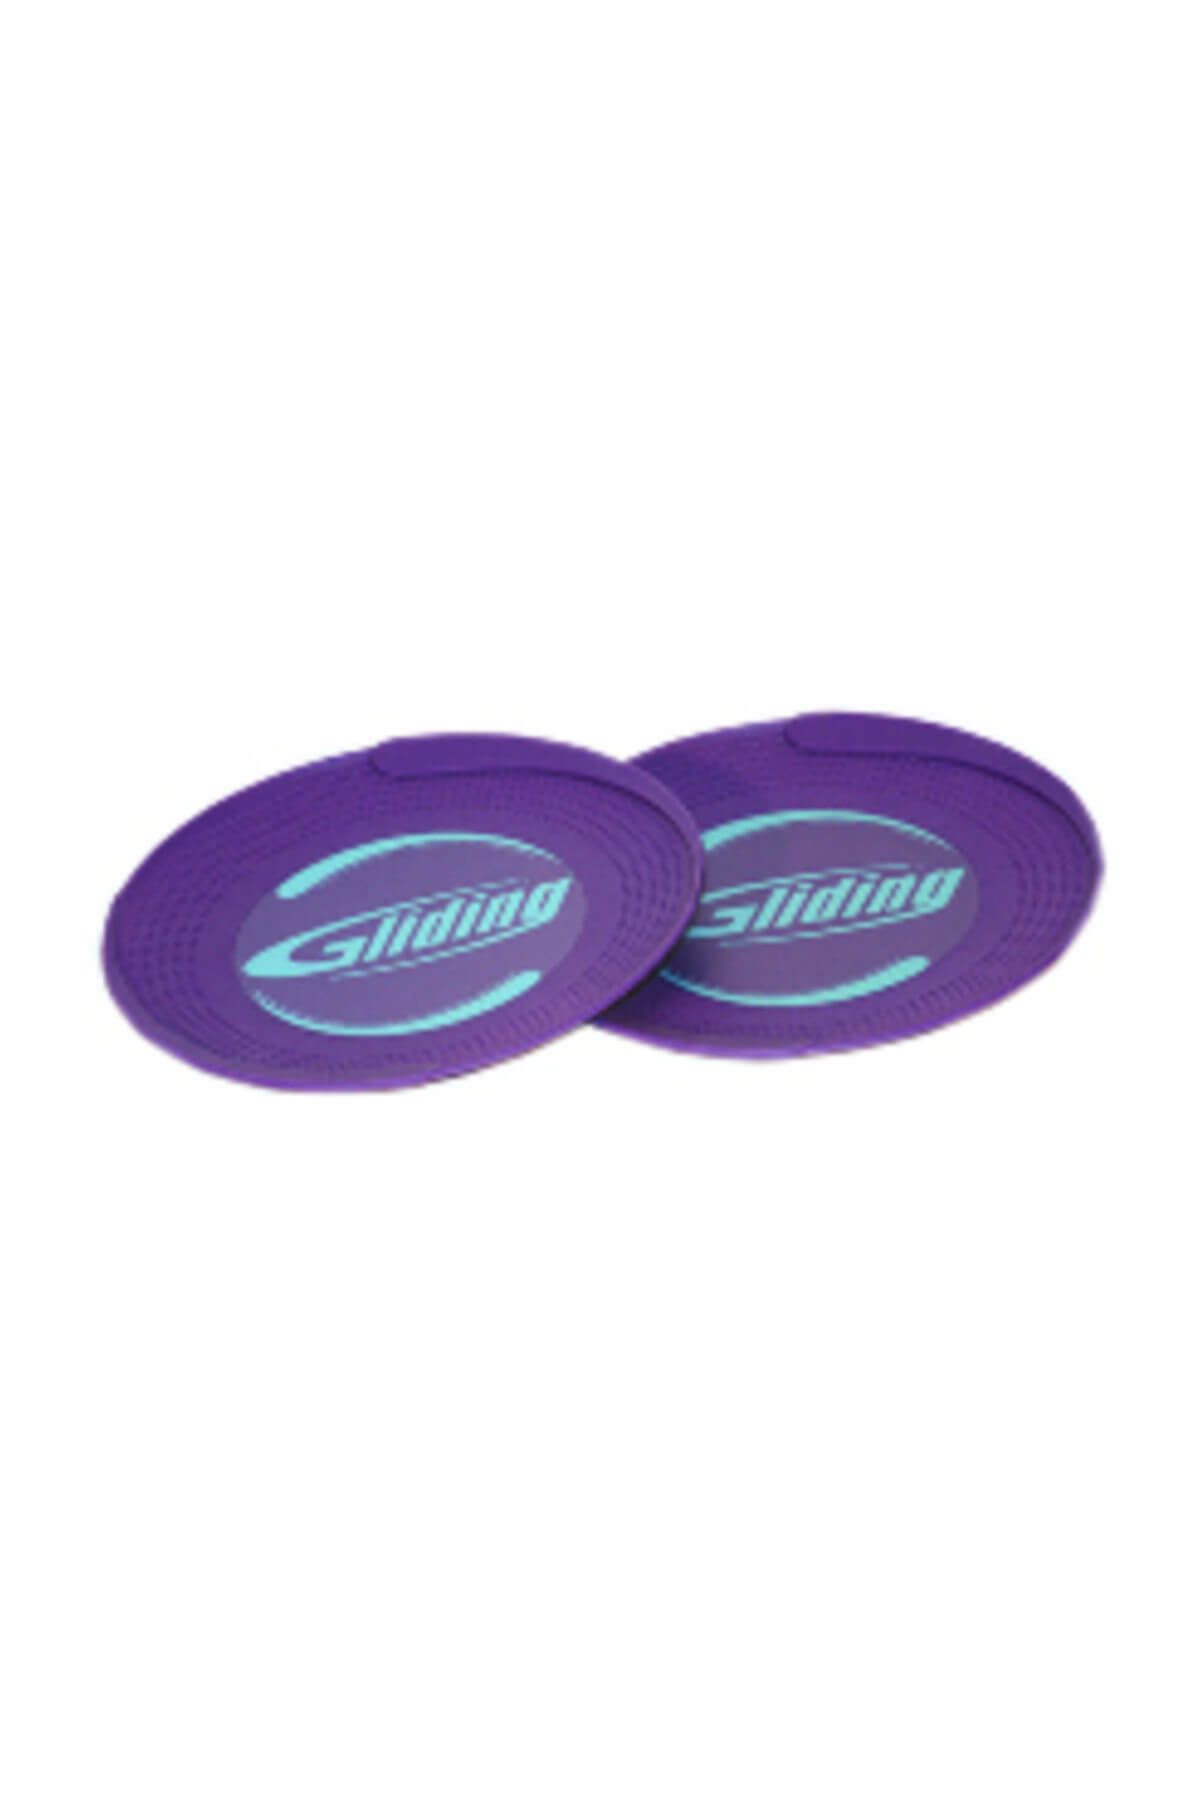 Finspor Egzersiz Diskleri Gliding Hardwood Floor Discs